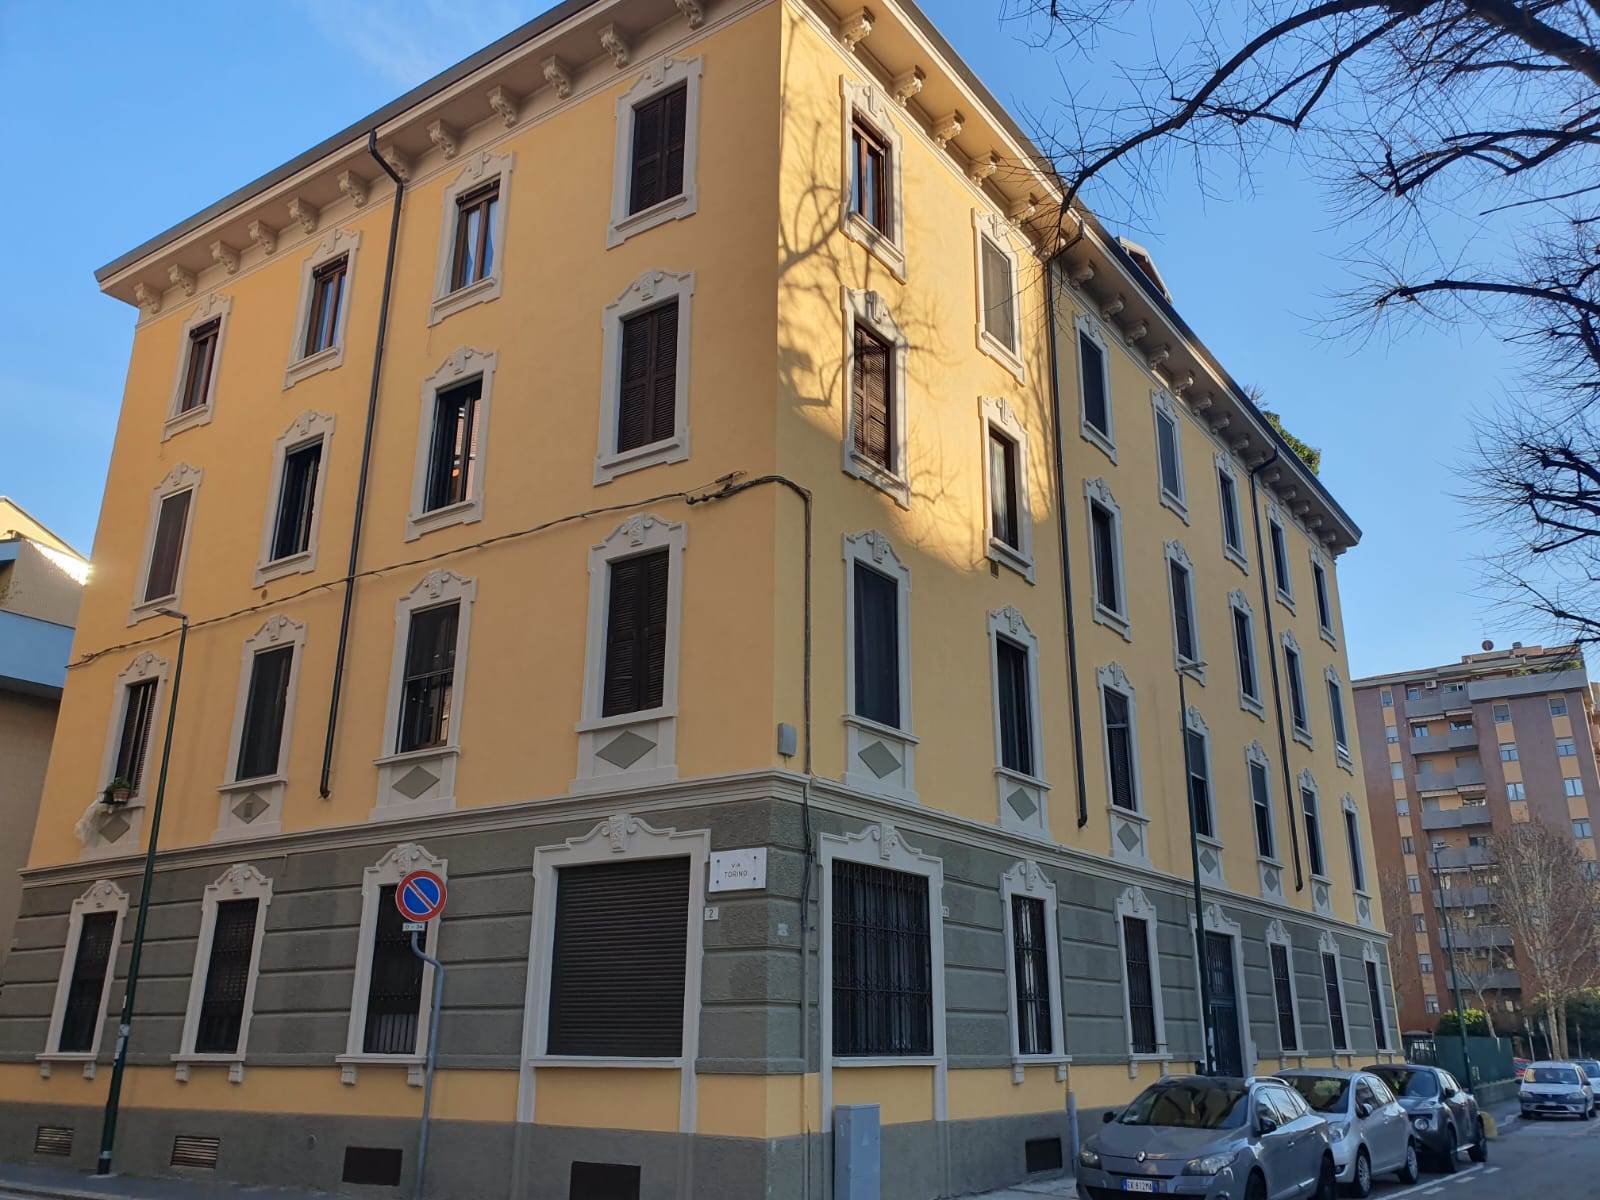 Rif 2/579 L'Abbruzzi Gruppo Immobiliare propone in Sesto San Giovanni, tra Rondò e Marelli, via Como, in stabile d'epoca ristrutturato recentemente 